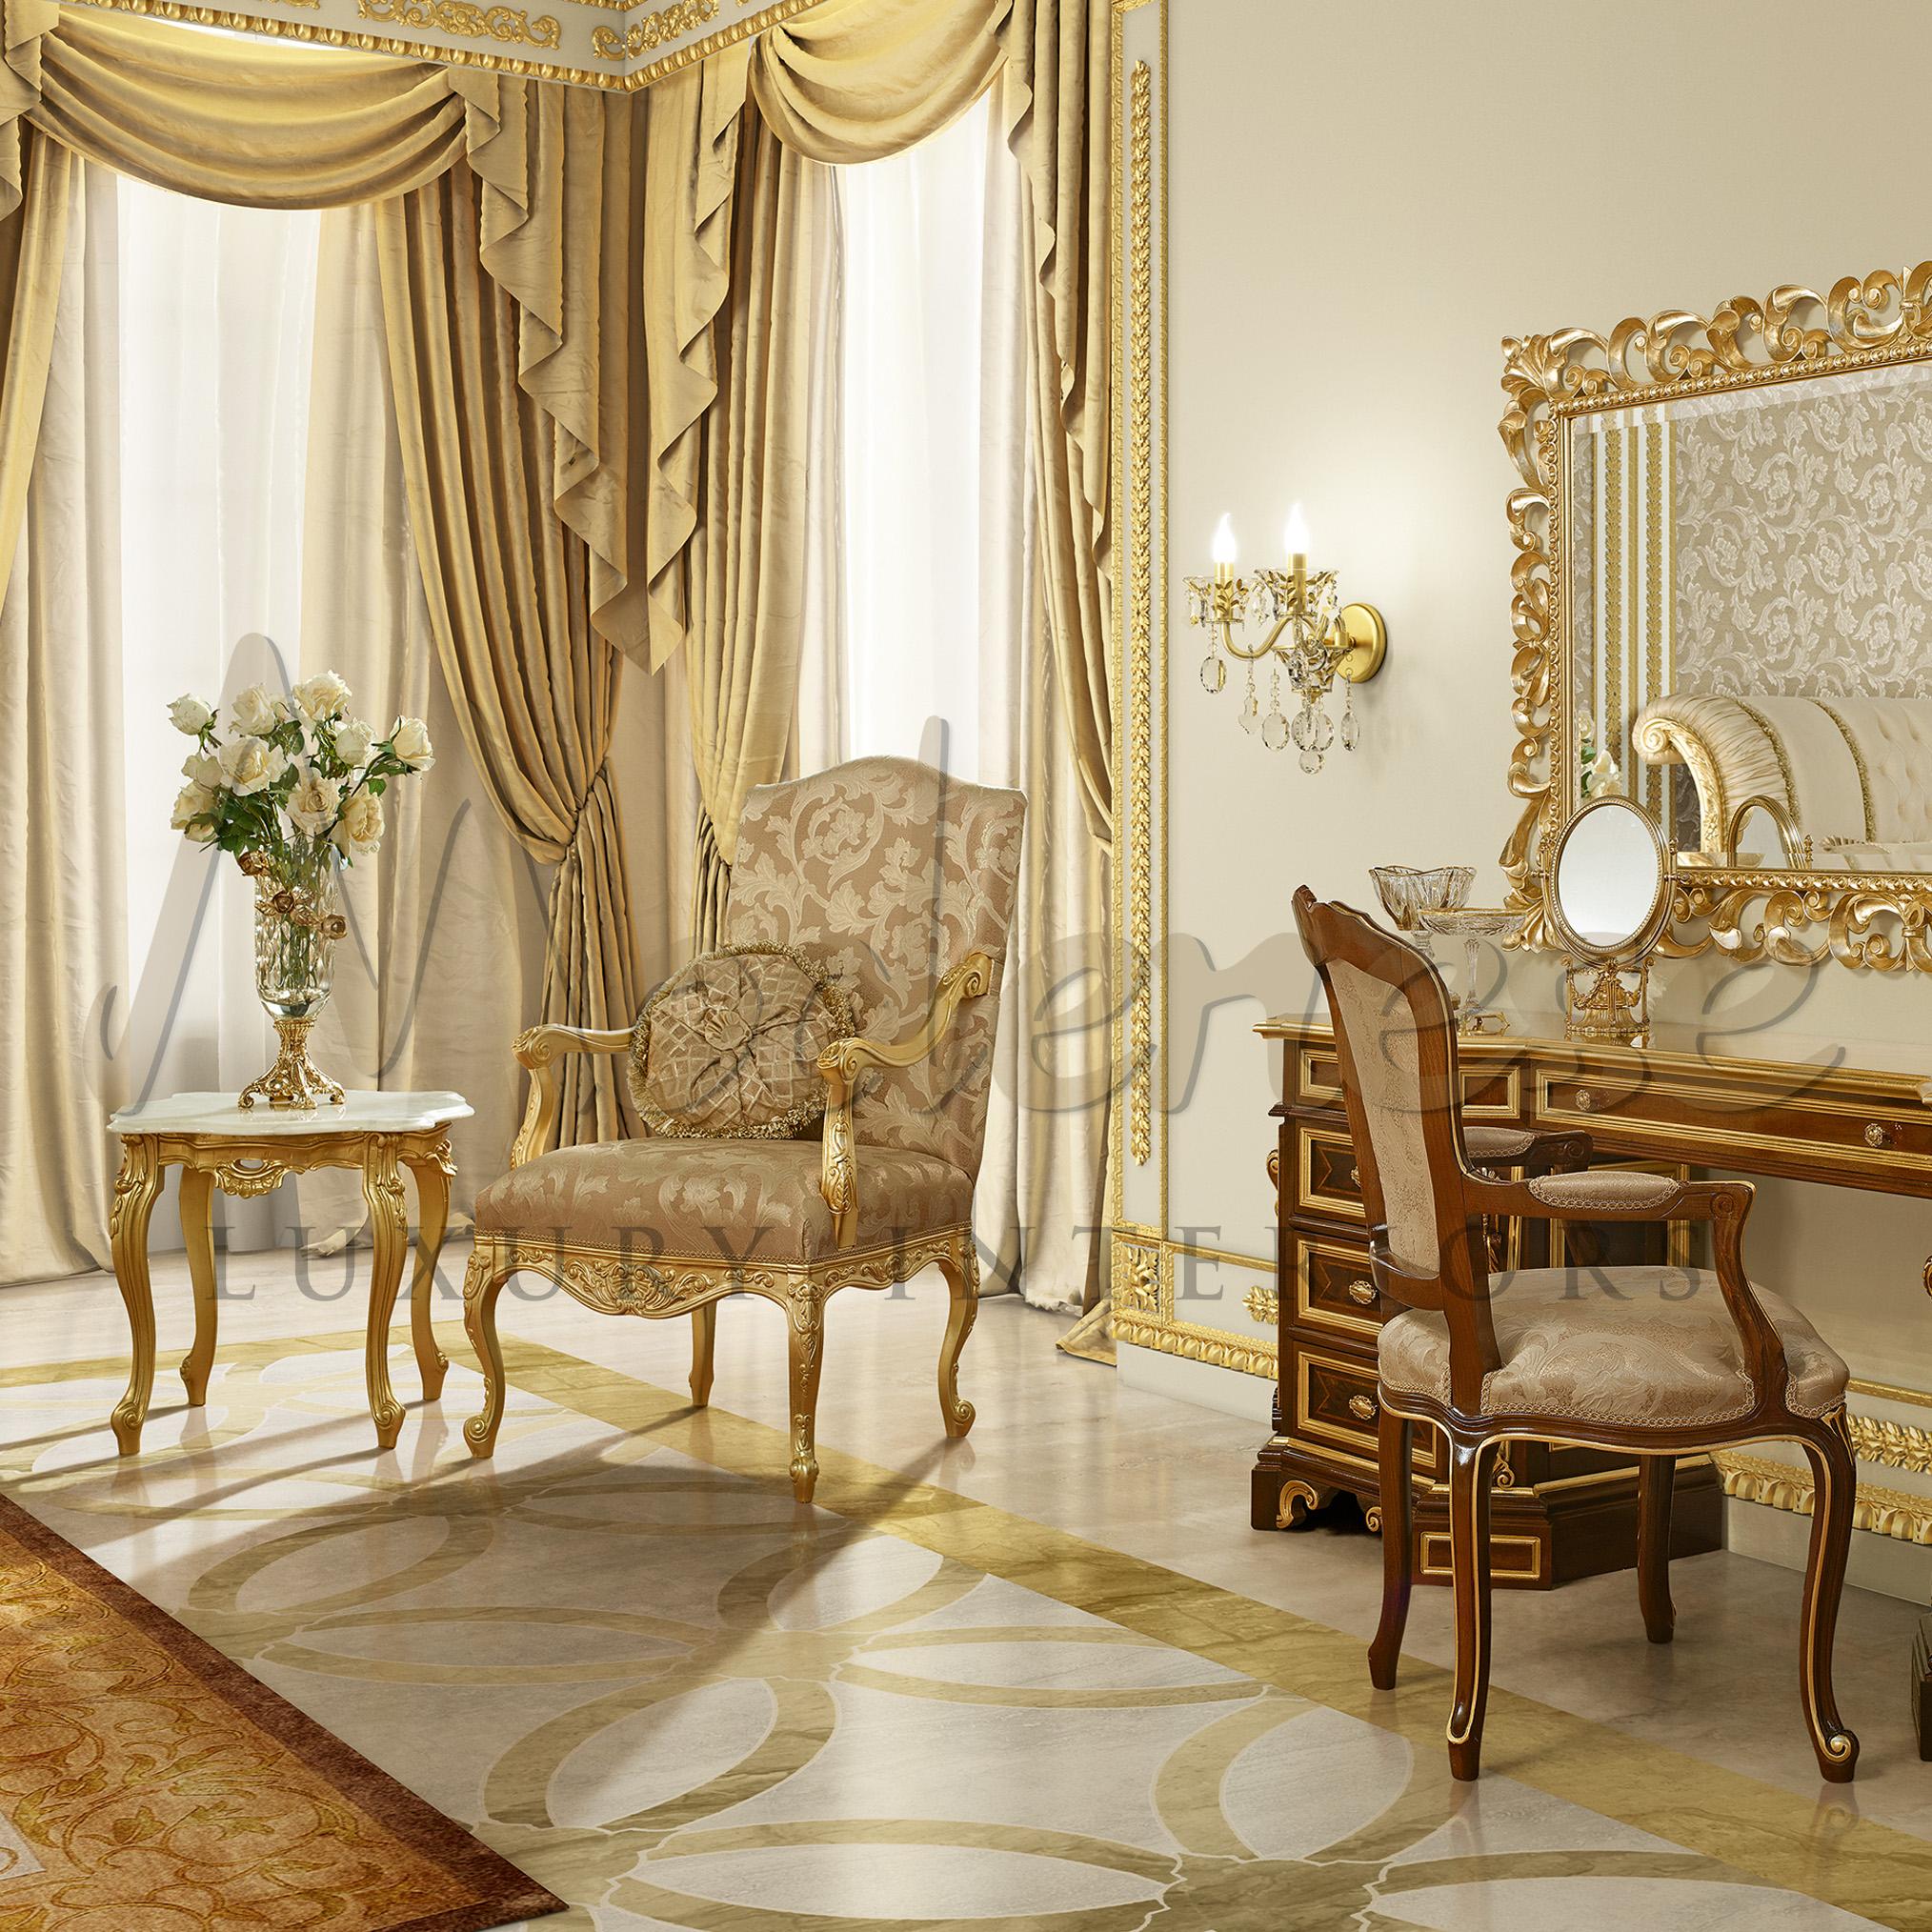 Ajoutez une touche sophistiquée à votre pièce avec un fauteuil beige doré orné de finitions en feuilles d'or. Elegamment enveloppé de notre propre design de tissu damassé. Remarquable sur le cadre doré et les pieds cabriole fabriqués à la main à